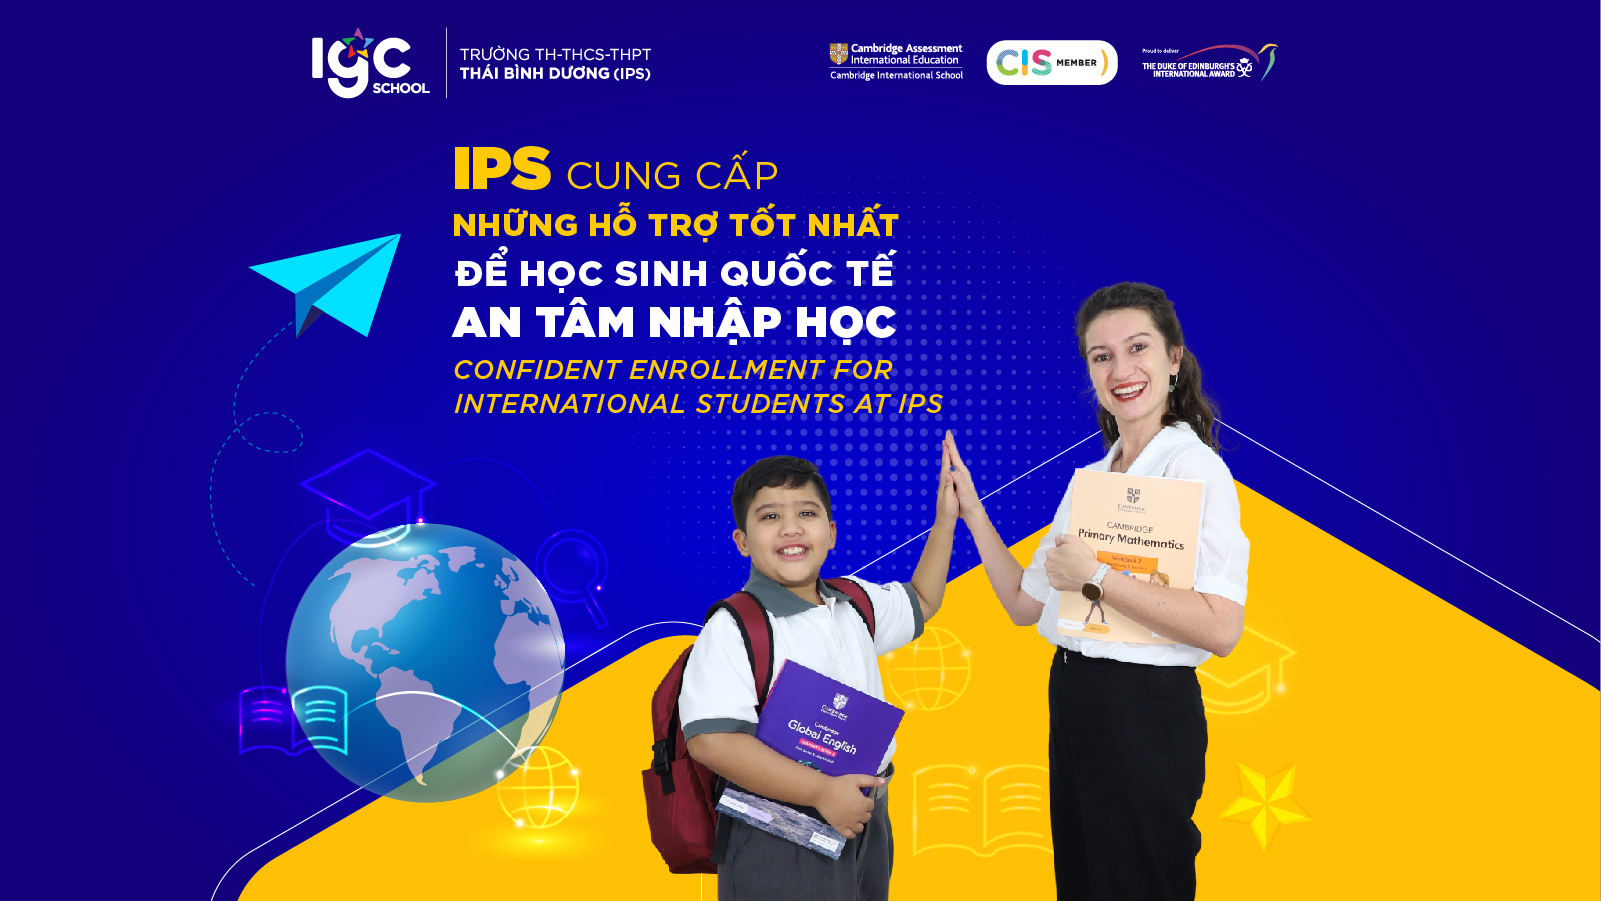 IPS cung cấp những hỗ trợ tốt nhất để học sinh quốc tế an tâm nhập học